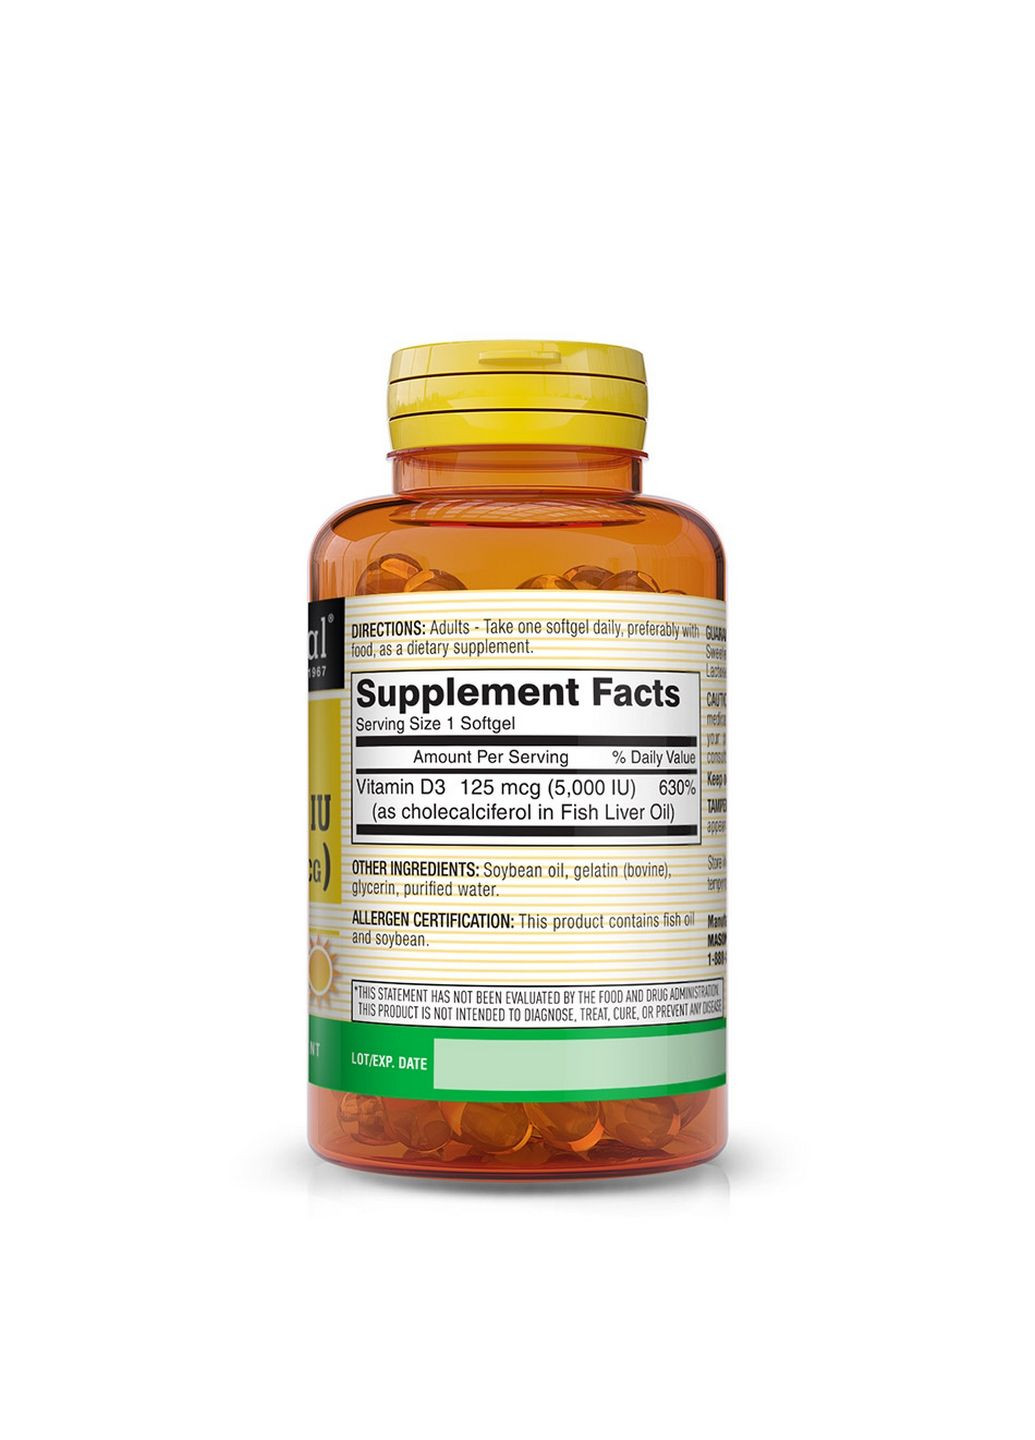 Витамины и минералы Vitamin D3 5000 IU, 50 капсул Mason Natural (293338385)